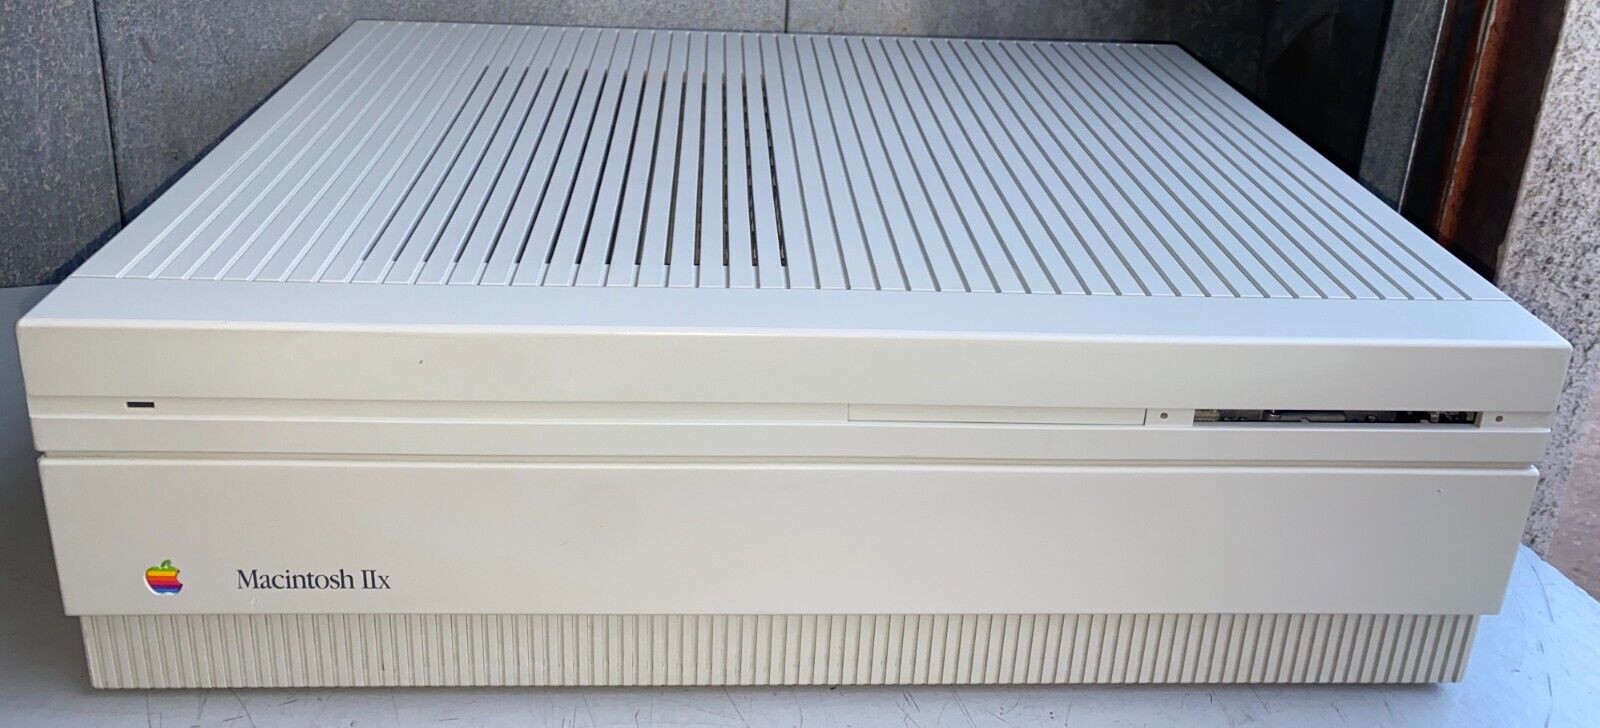 Working Clean Rare Apple Mac Macintosh IIx M5840 Desktop Computer             KL